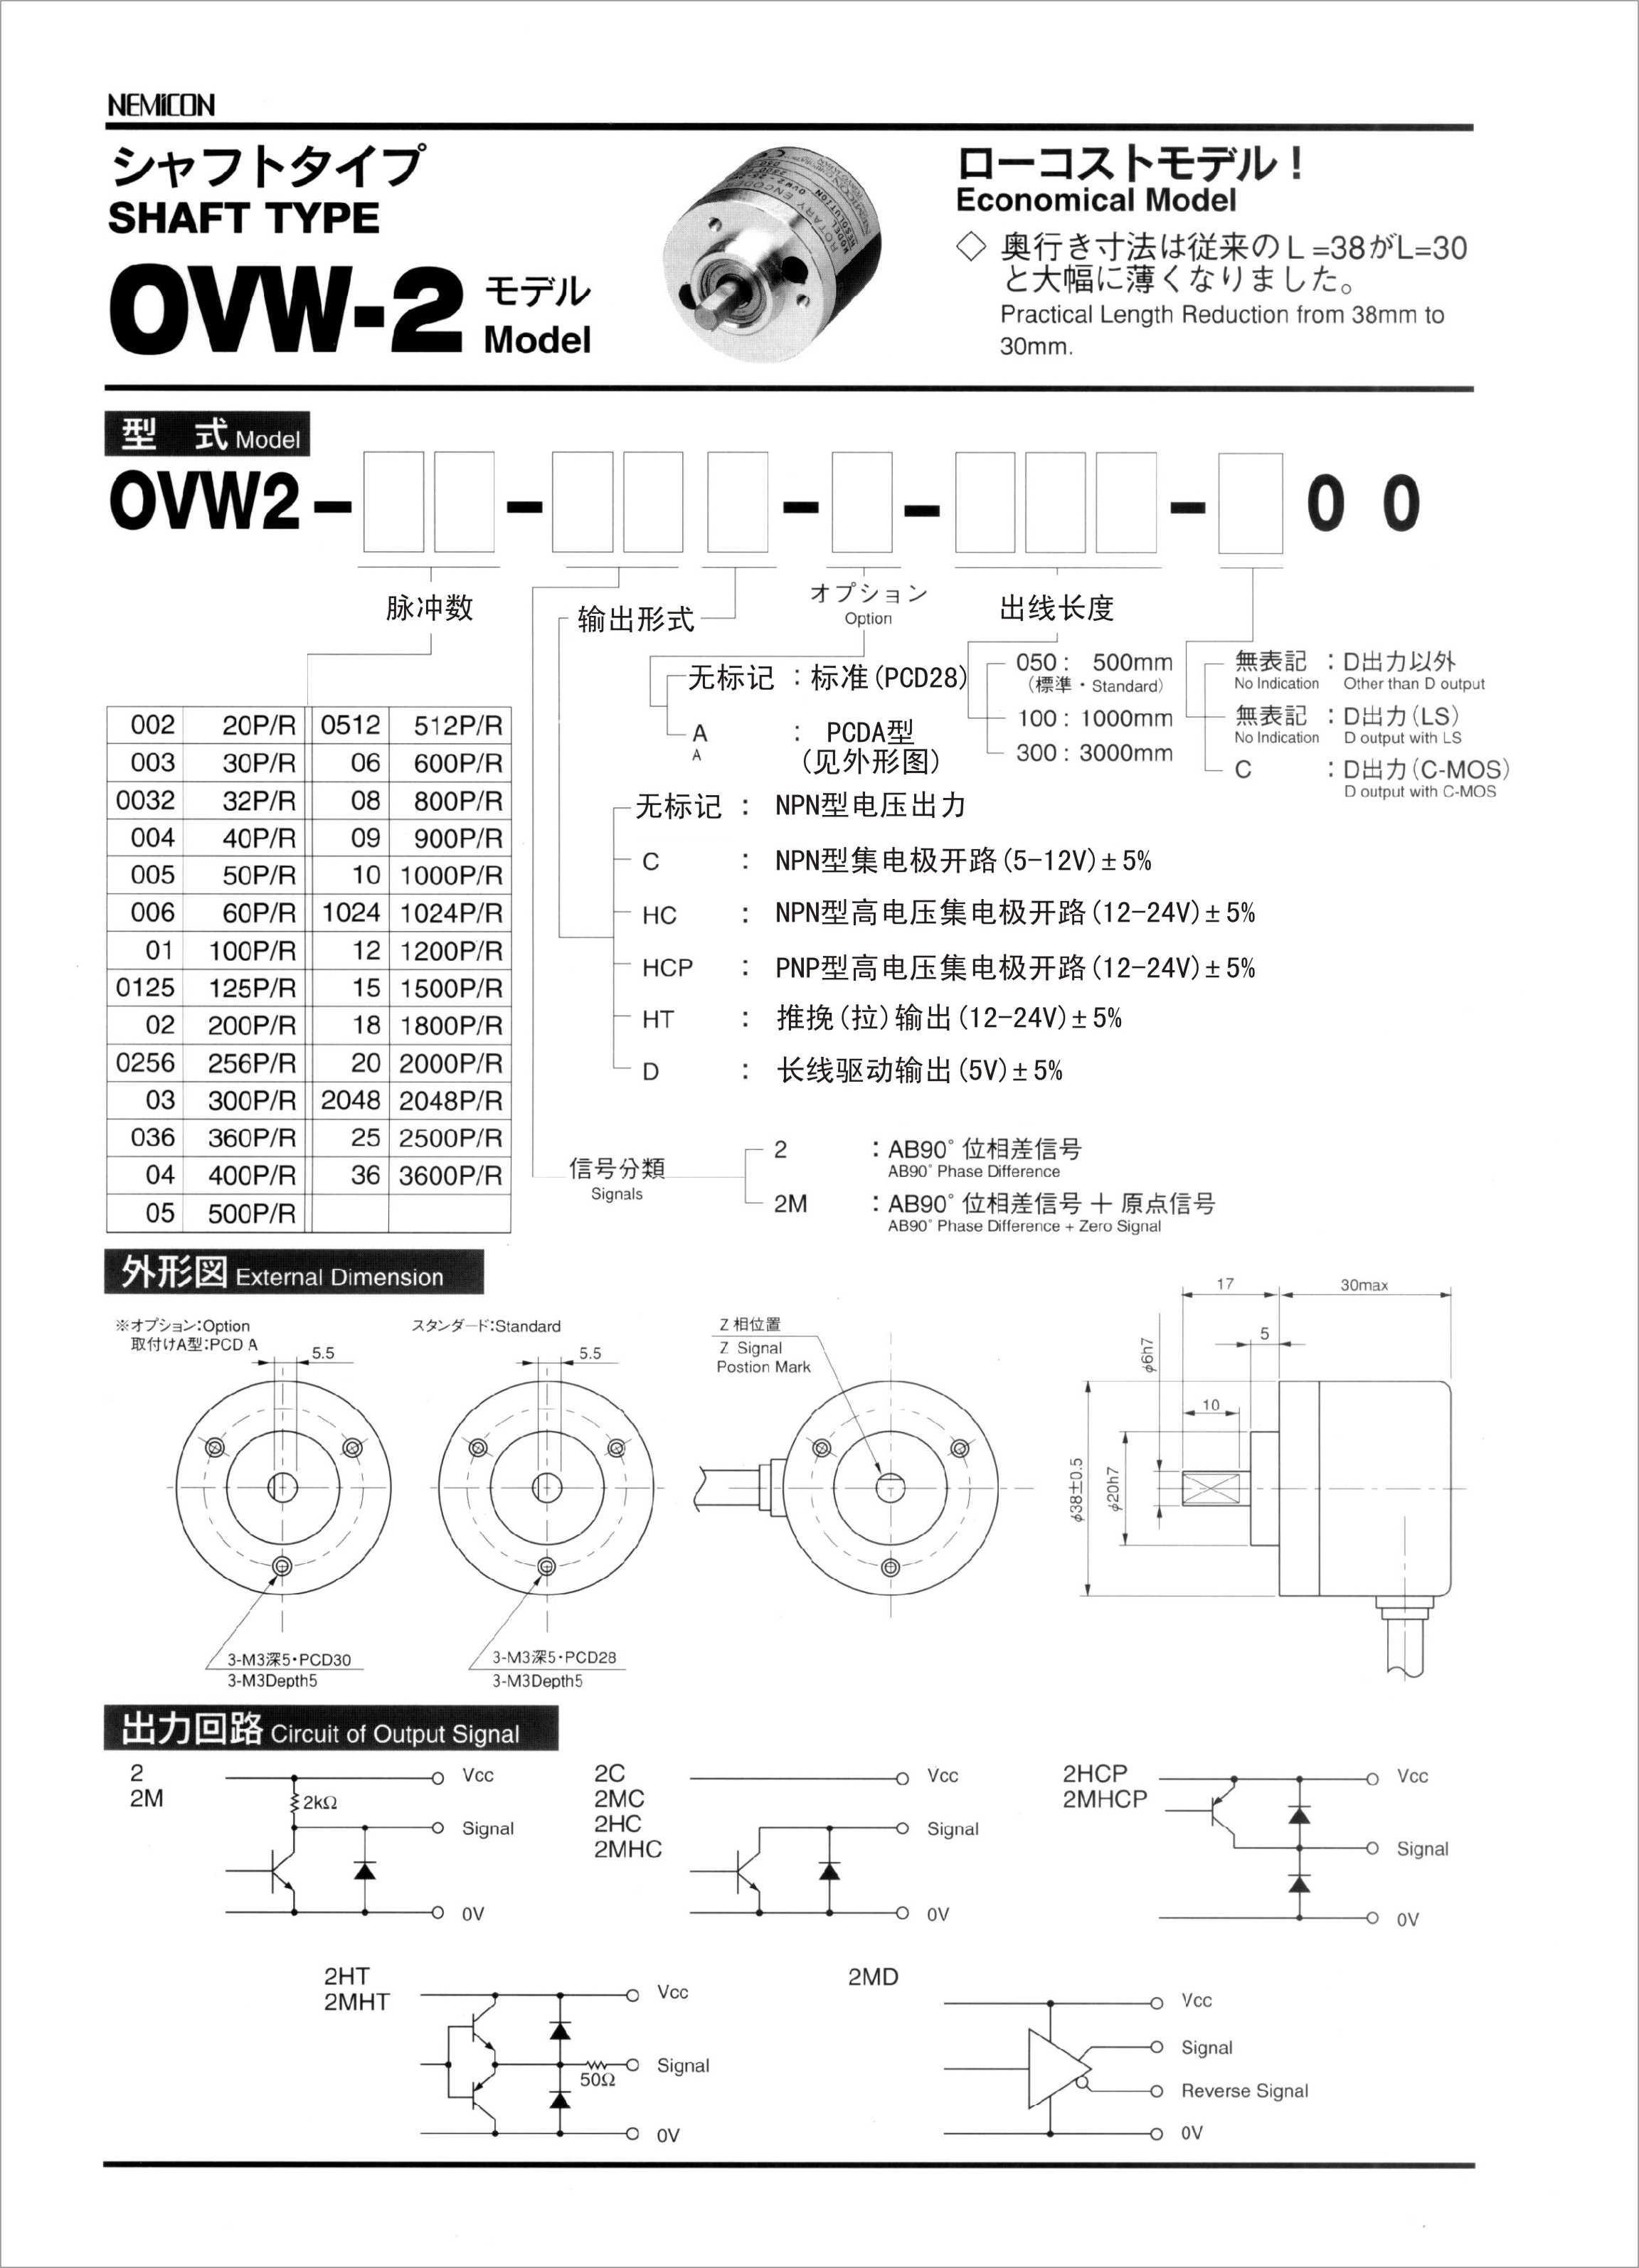 OVW2-02-2MHT NEMICON,内密控,OVW2-02-2MHT,内密控编码器,OVW2